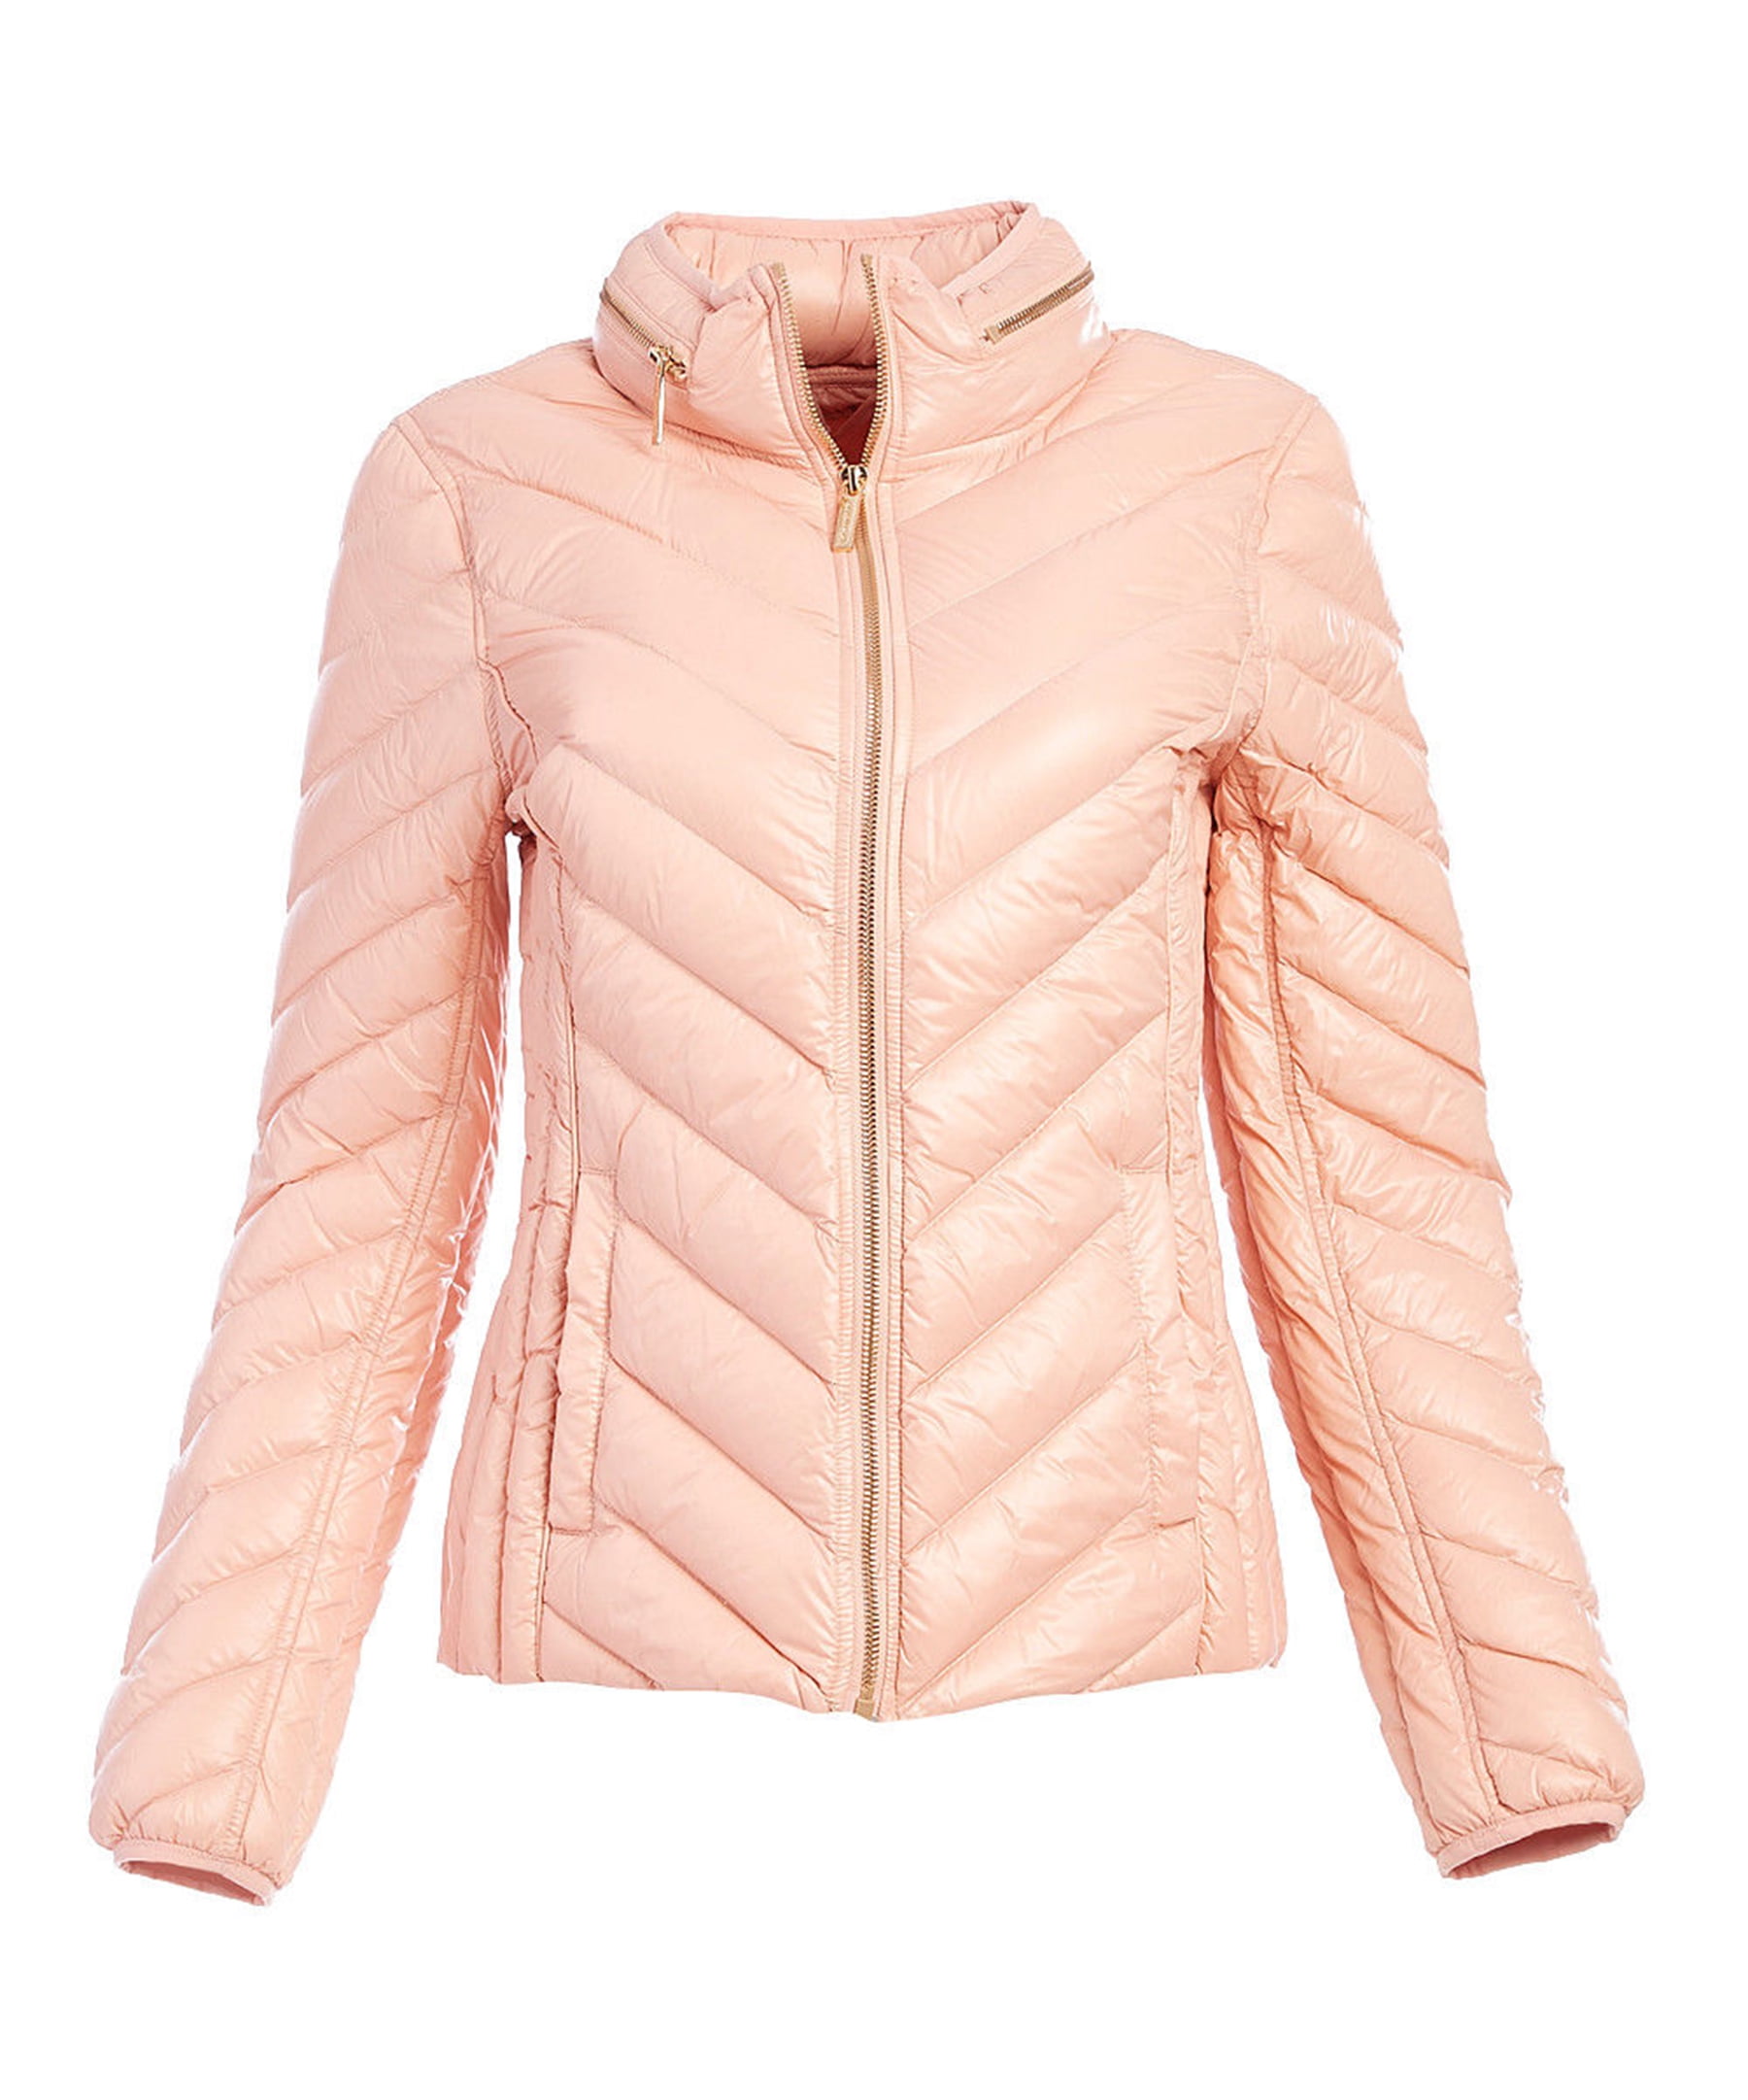 hot pink puffer jacket women's 